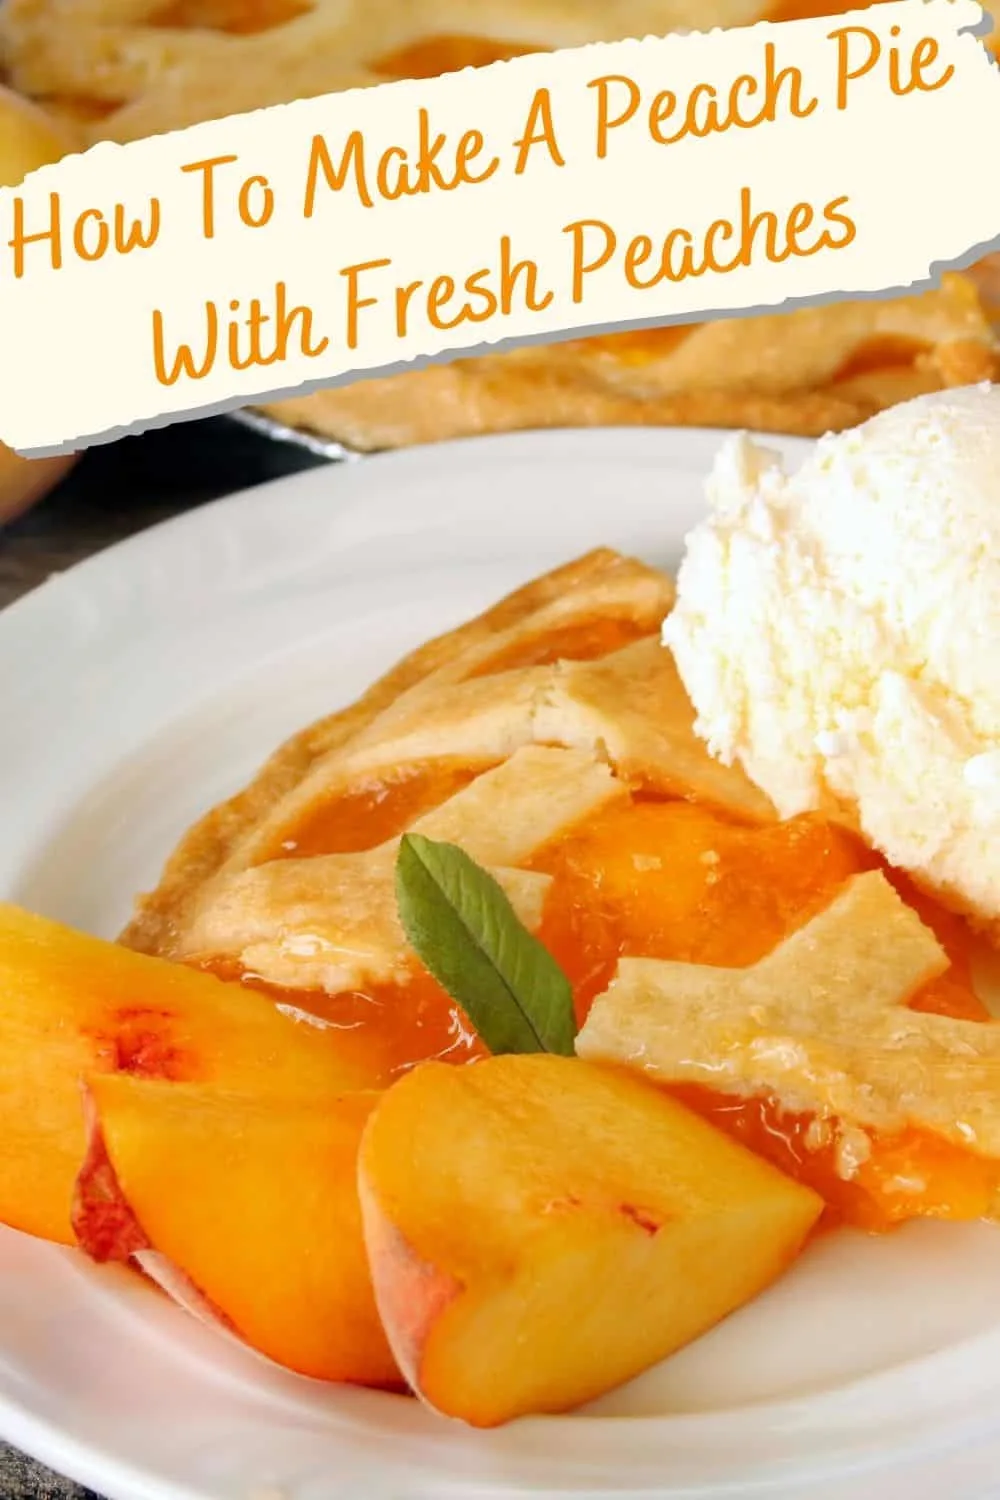 How to make a peach pie with fresh peaches